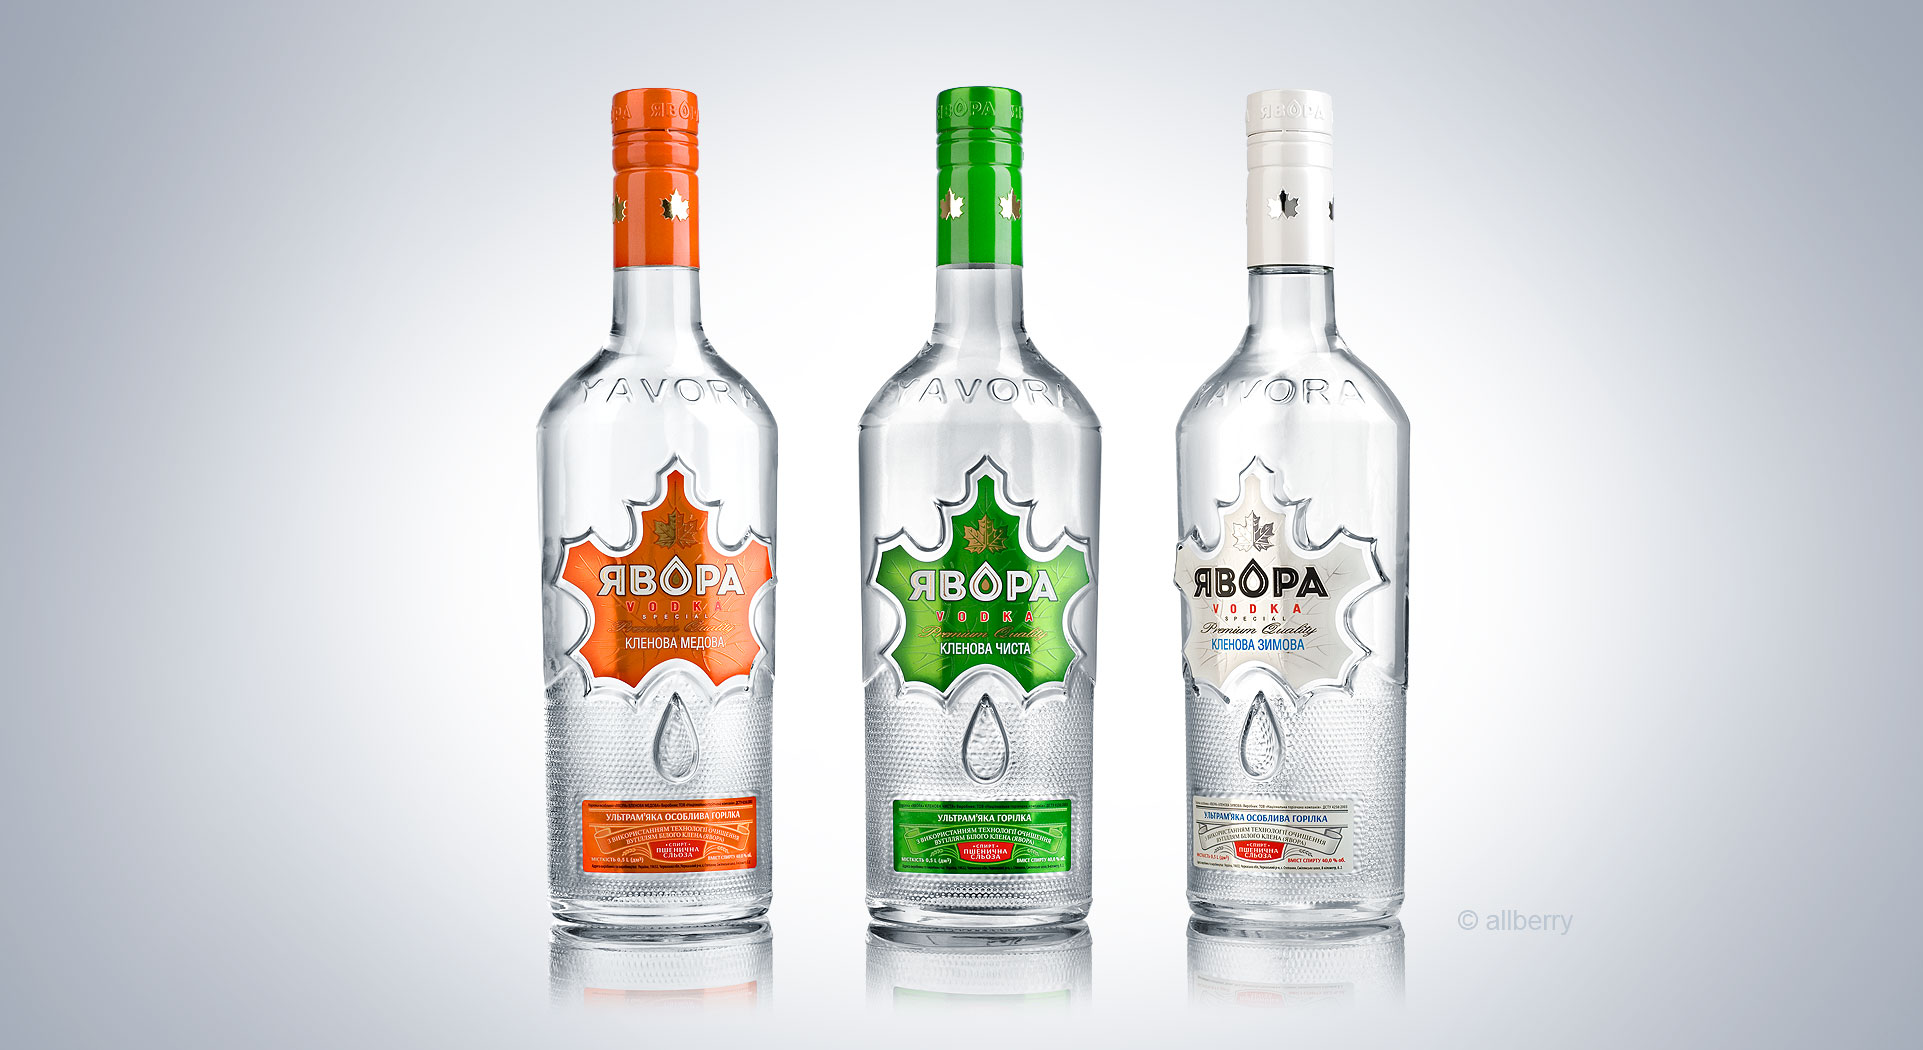 YAVORA vodka bottle and label design.